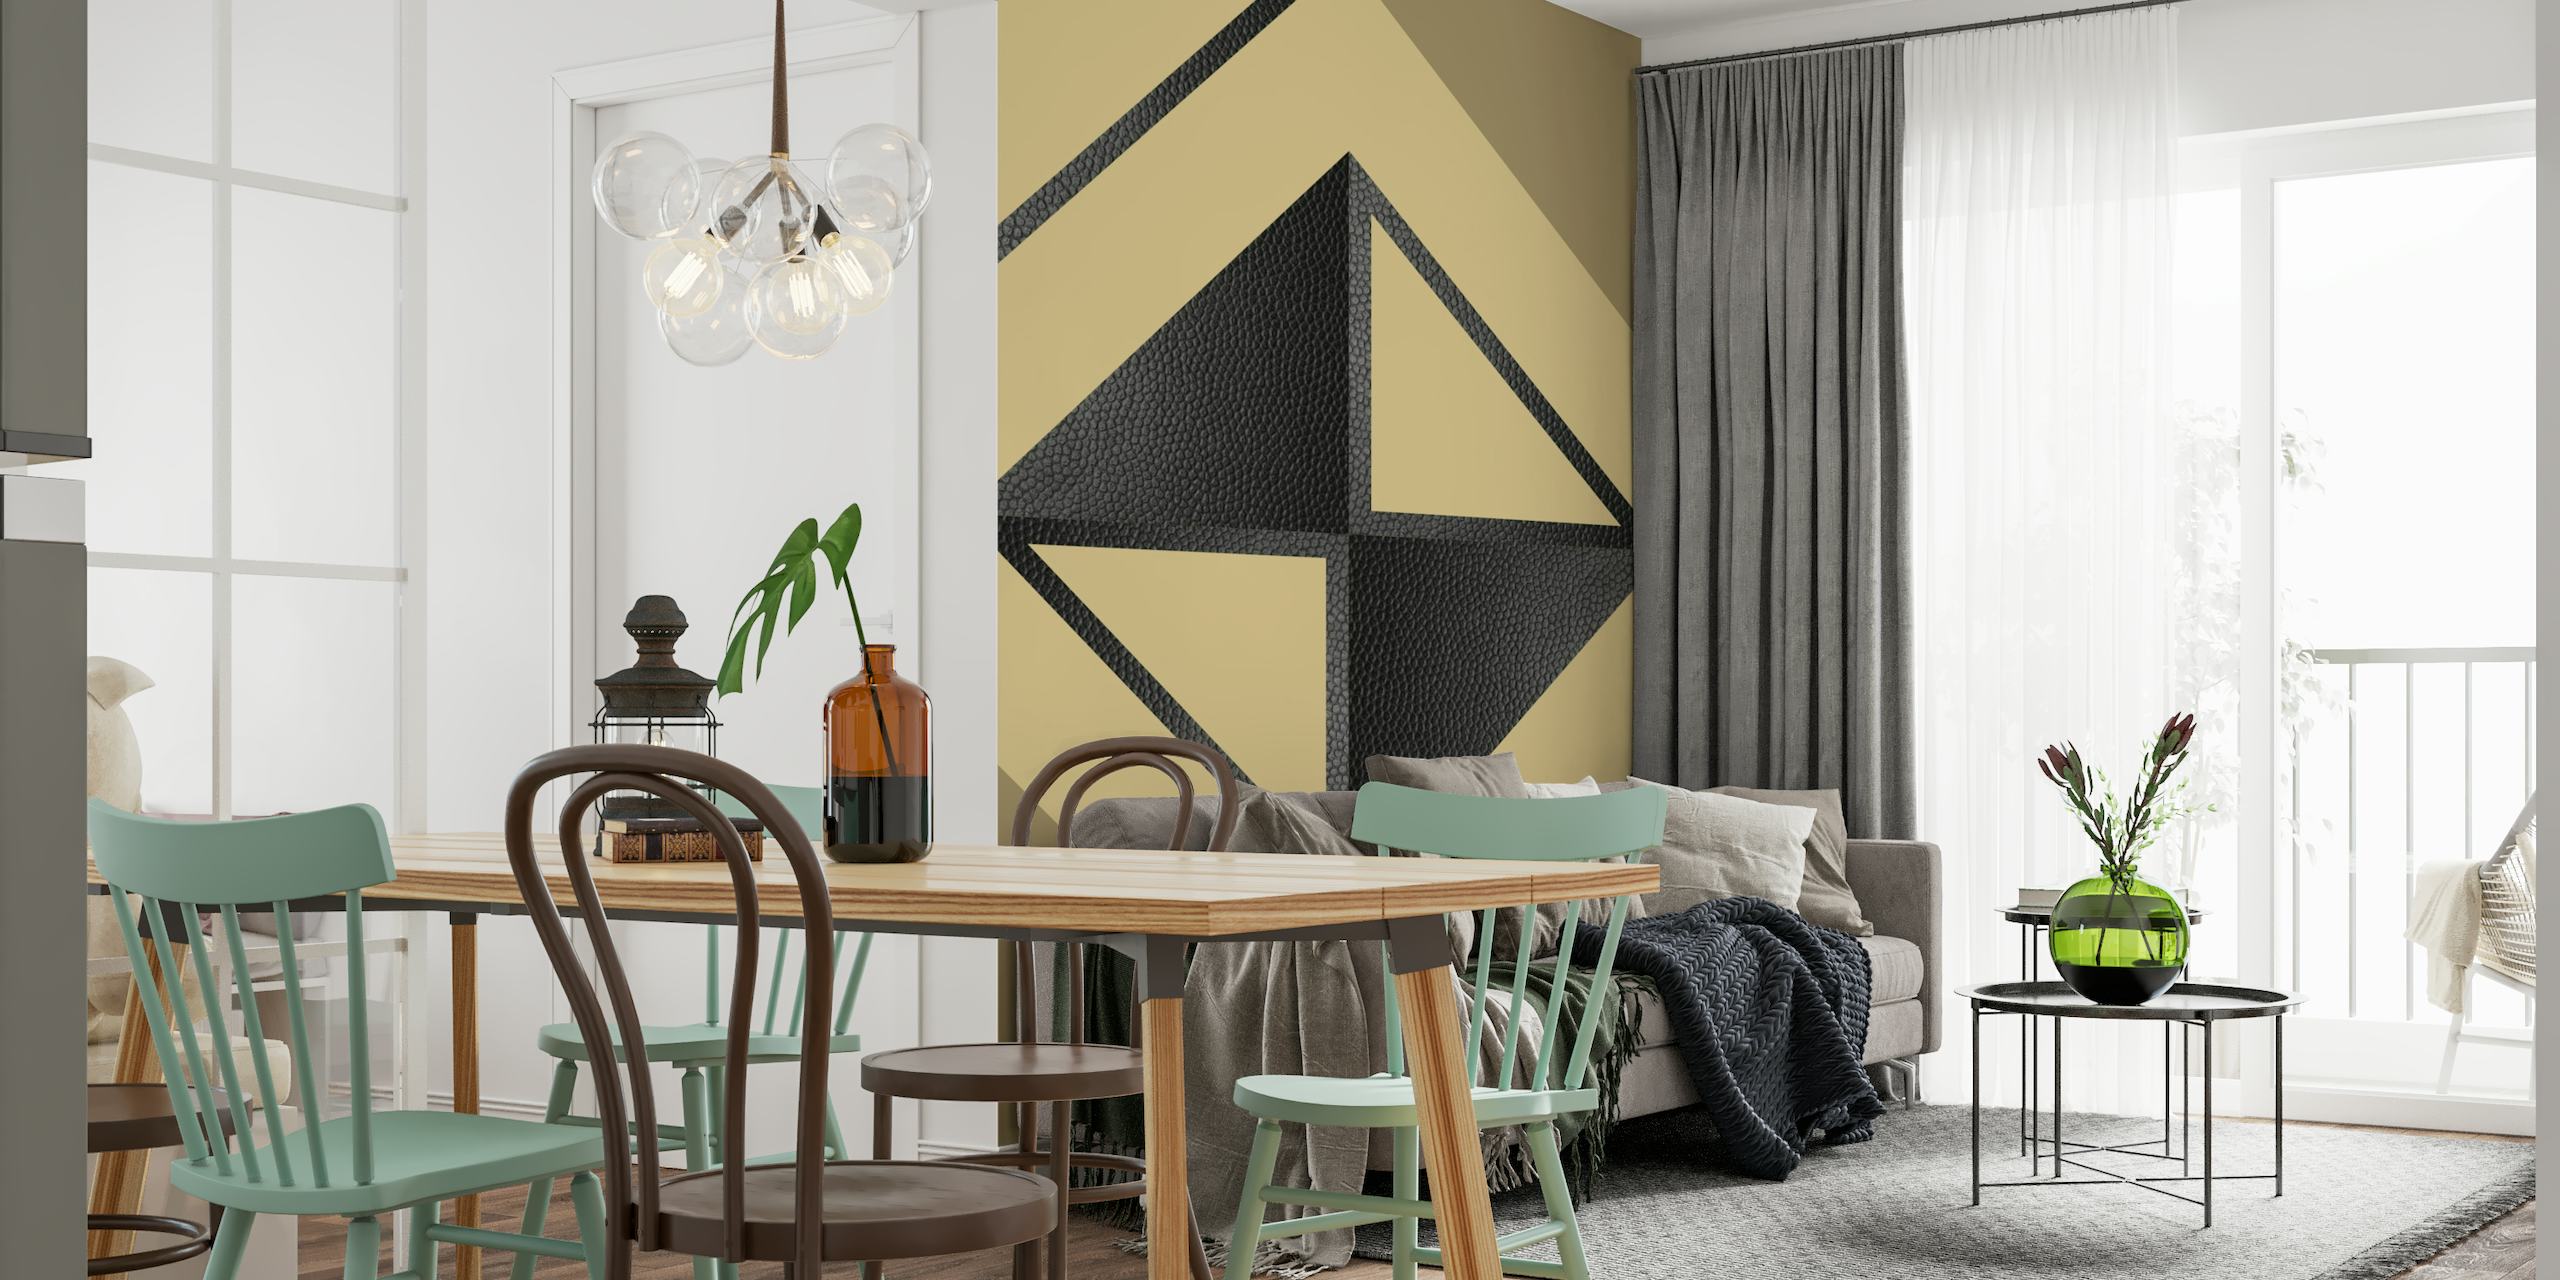 Gult og svart abstrakt geometrisk veggmaleri med minimalistiske trekanter og former